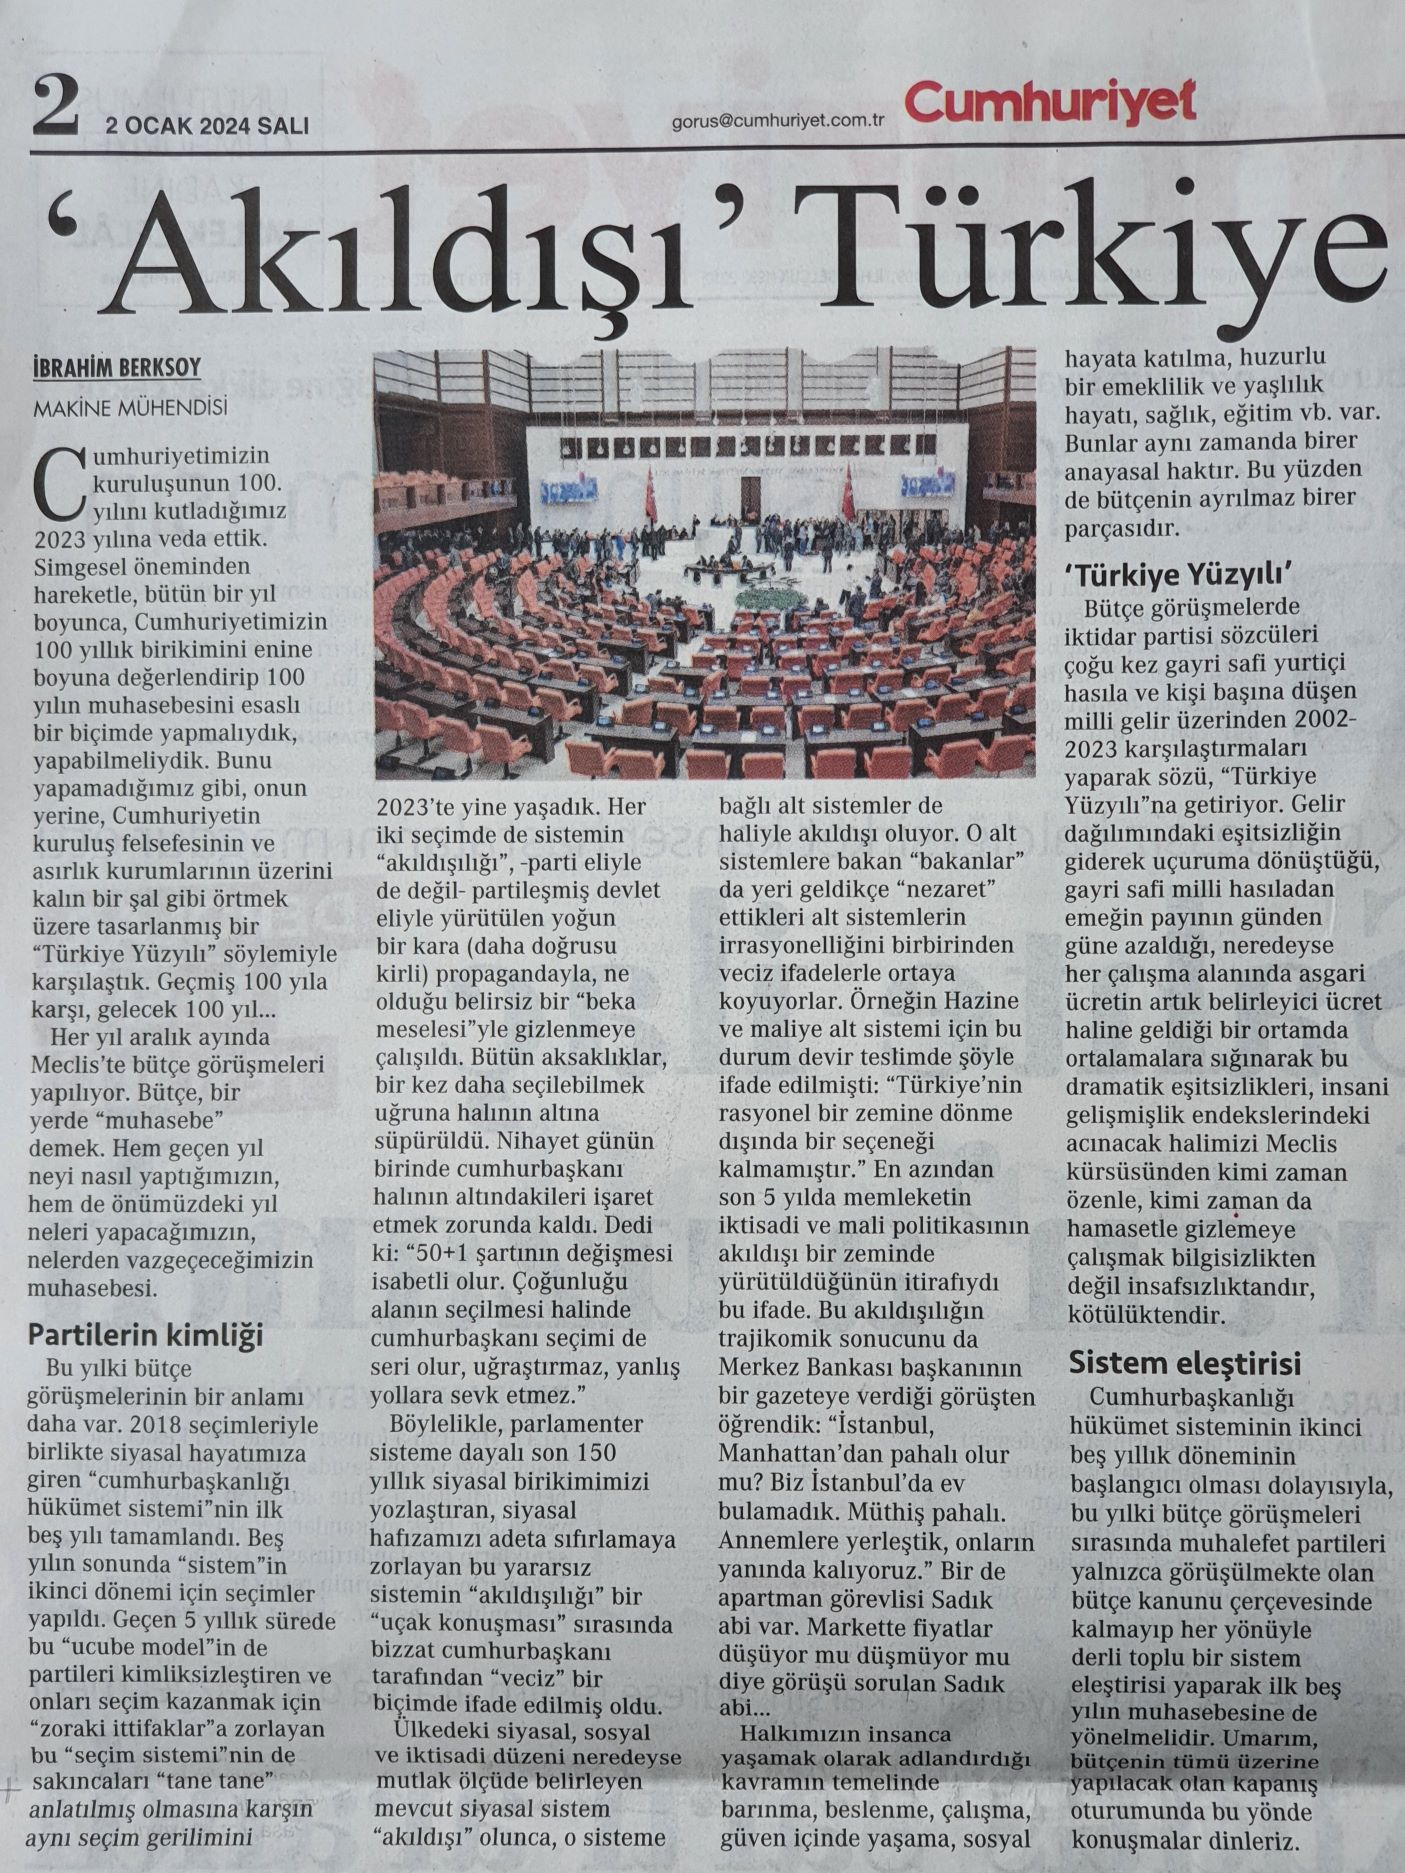 'Akıldışı' Türkiye